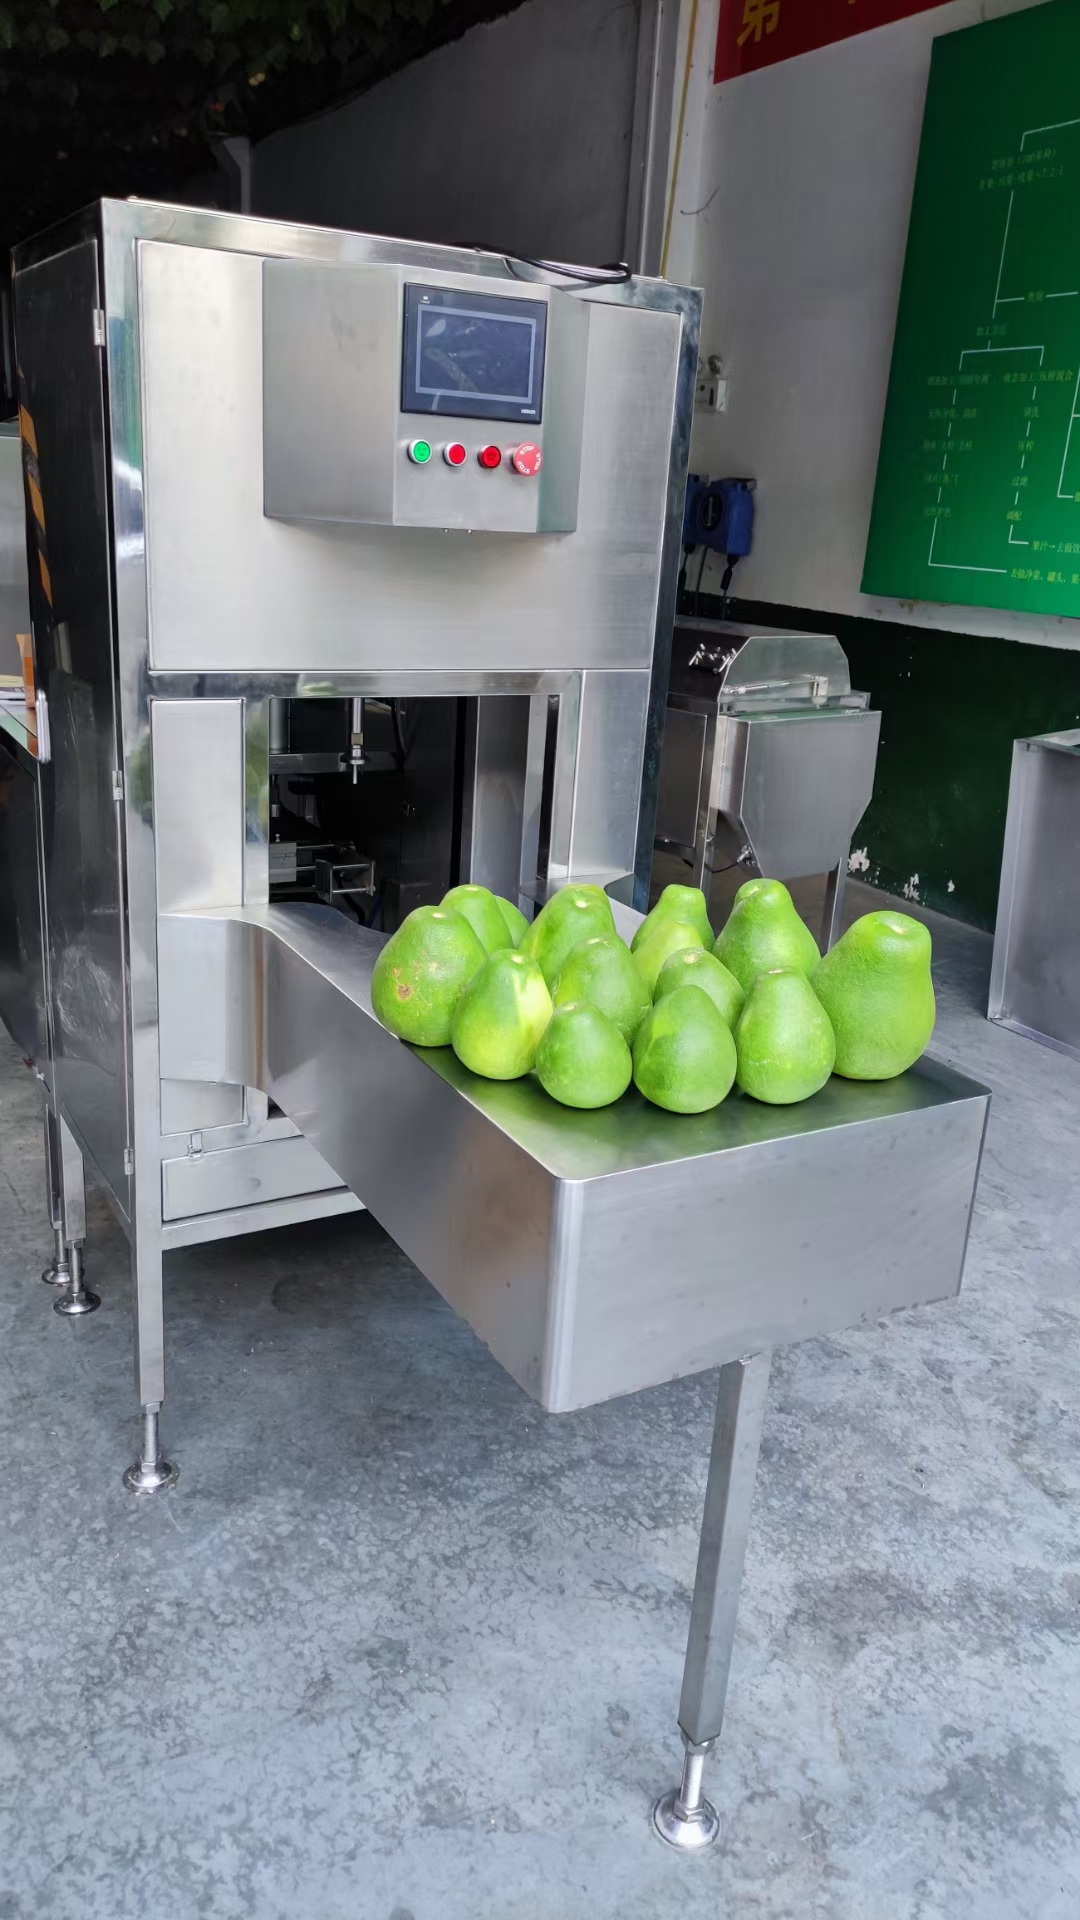 Fruit Peeling Machine  Industrial Fruit Peeler to Remove Peels